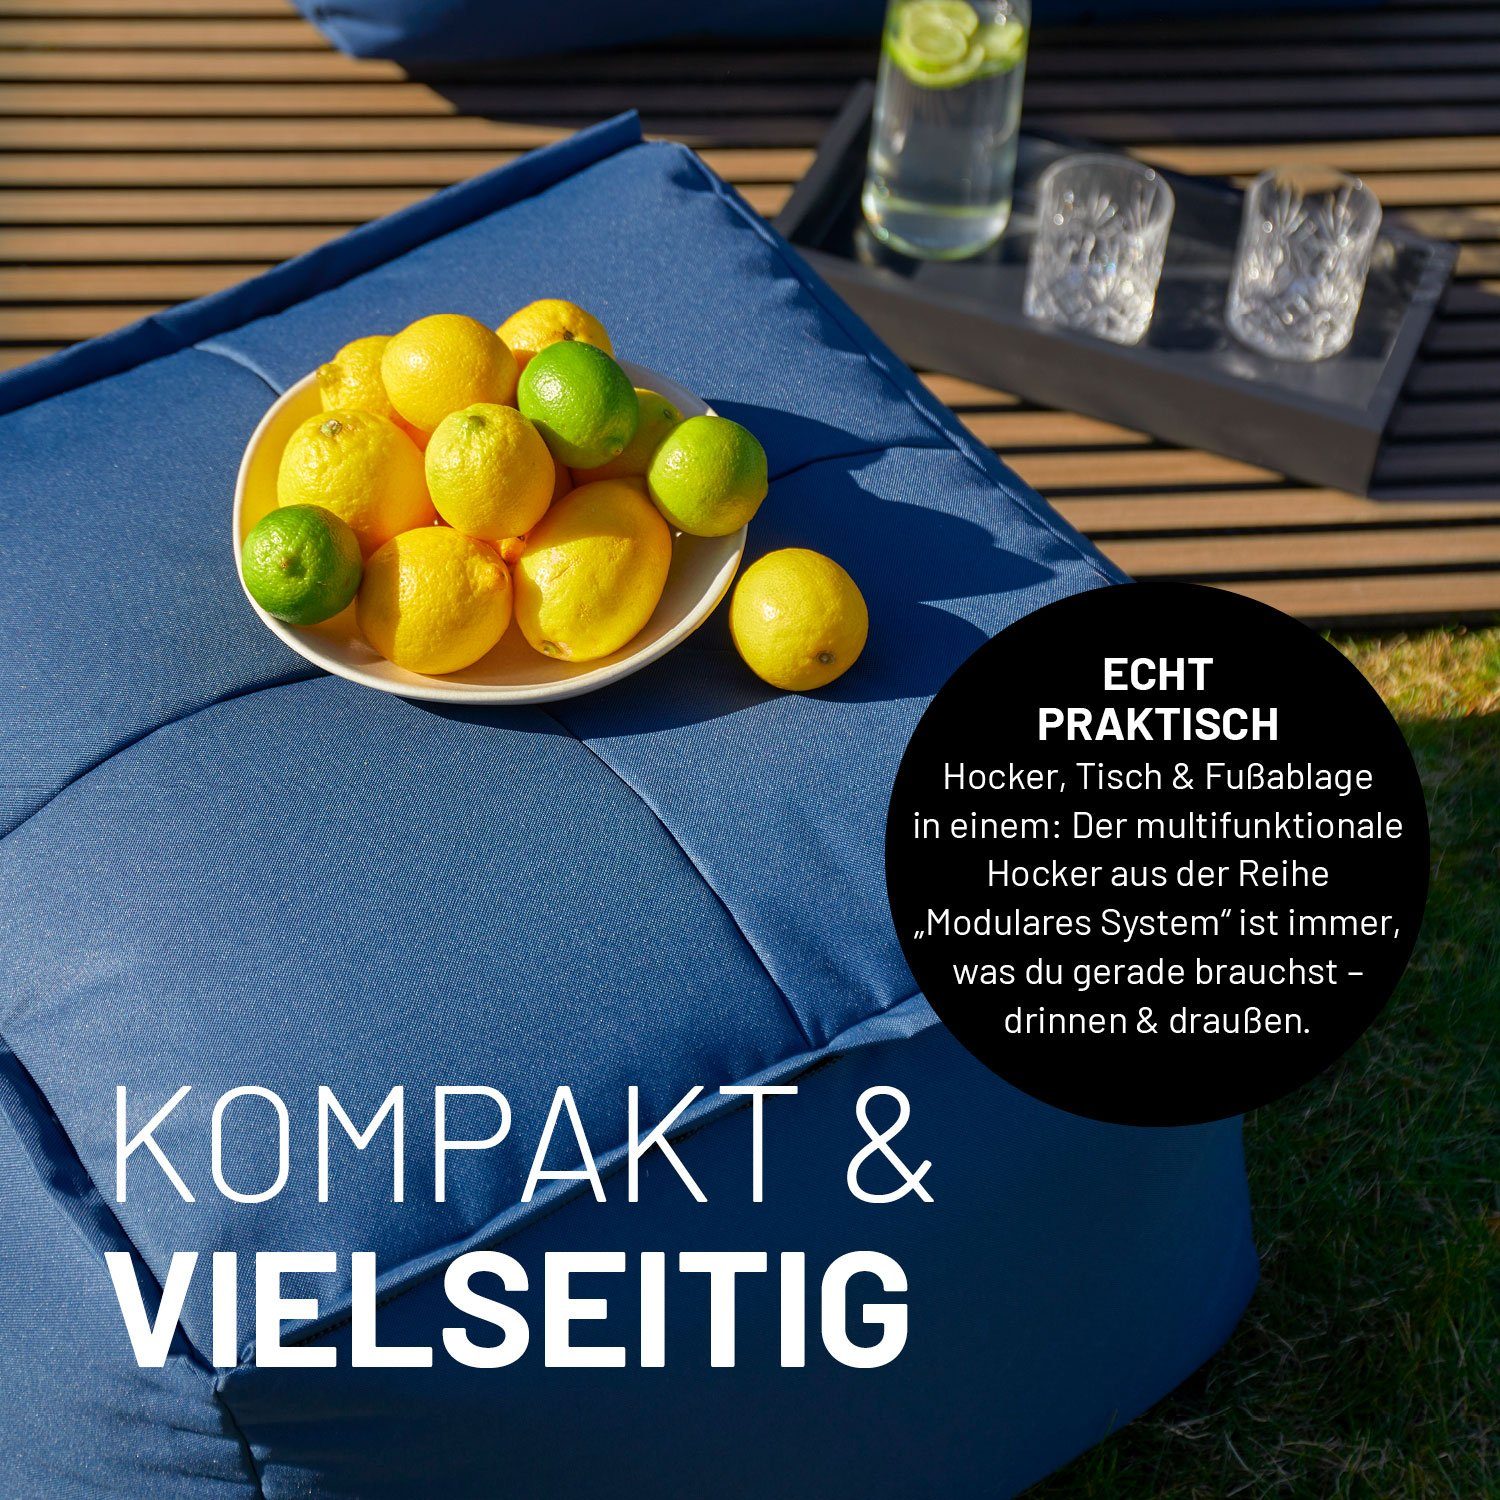 grau System, Sofa In- wasserfest Lumaland waschbar mit erweiterbar Bezug Modularen Loungeset & individuell kombinierbar Sessel abnehmbarer dem outdoor